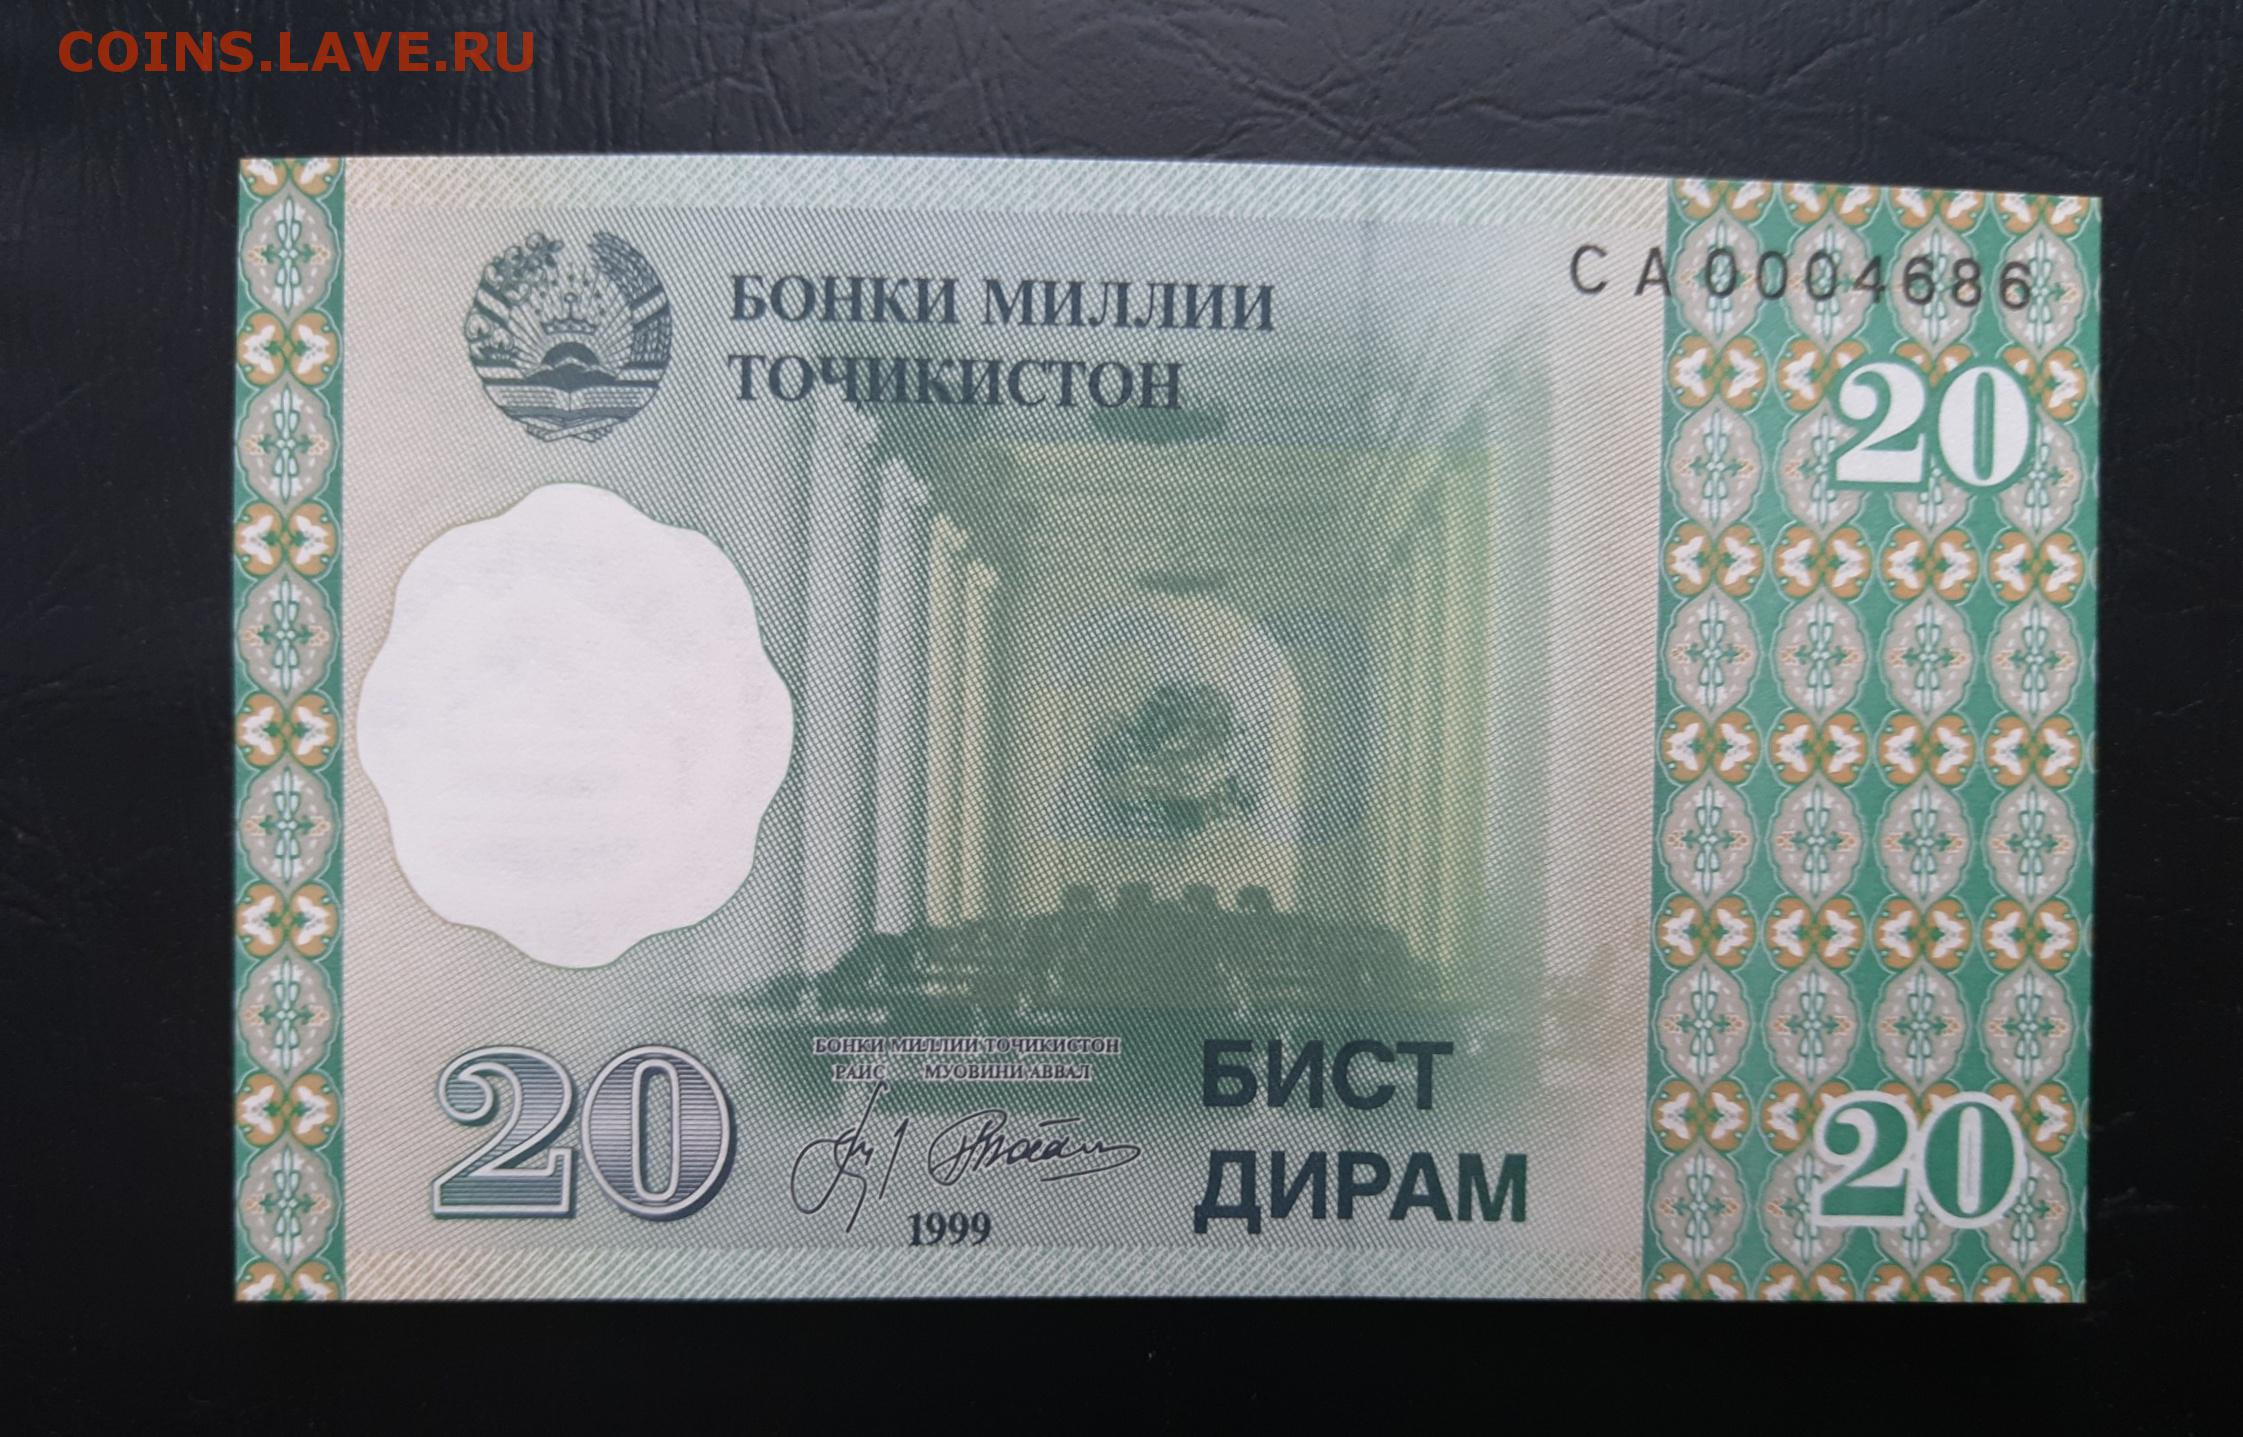 Сума таджикистан. Купюра Таджикистана 20. 20 Дирам Таджикистан. 20 Дирам Таджикистан банкнота. Таджикские бумажные деньги.